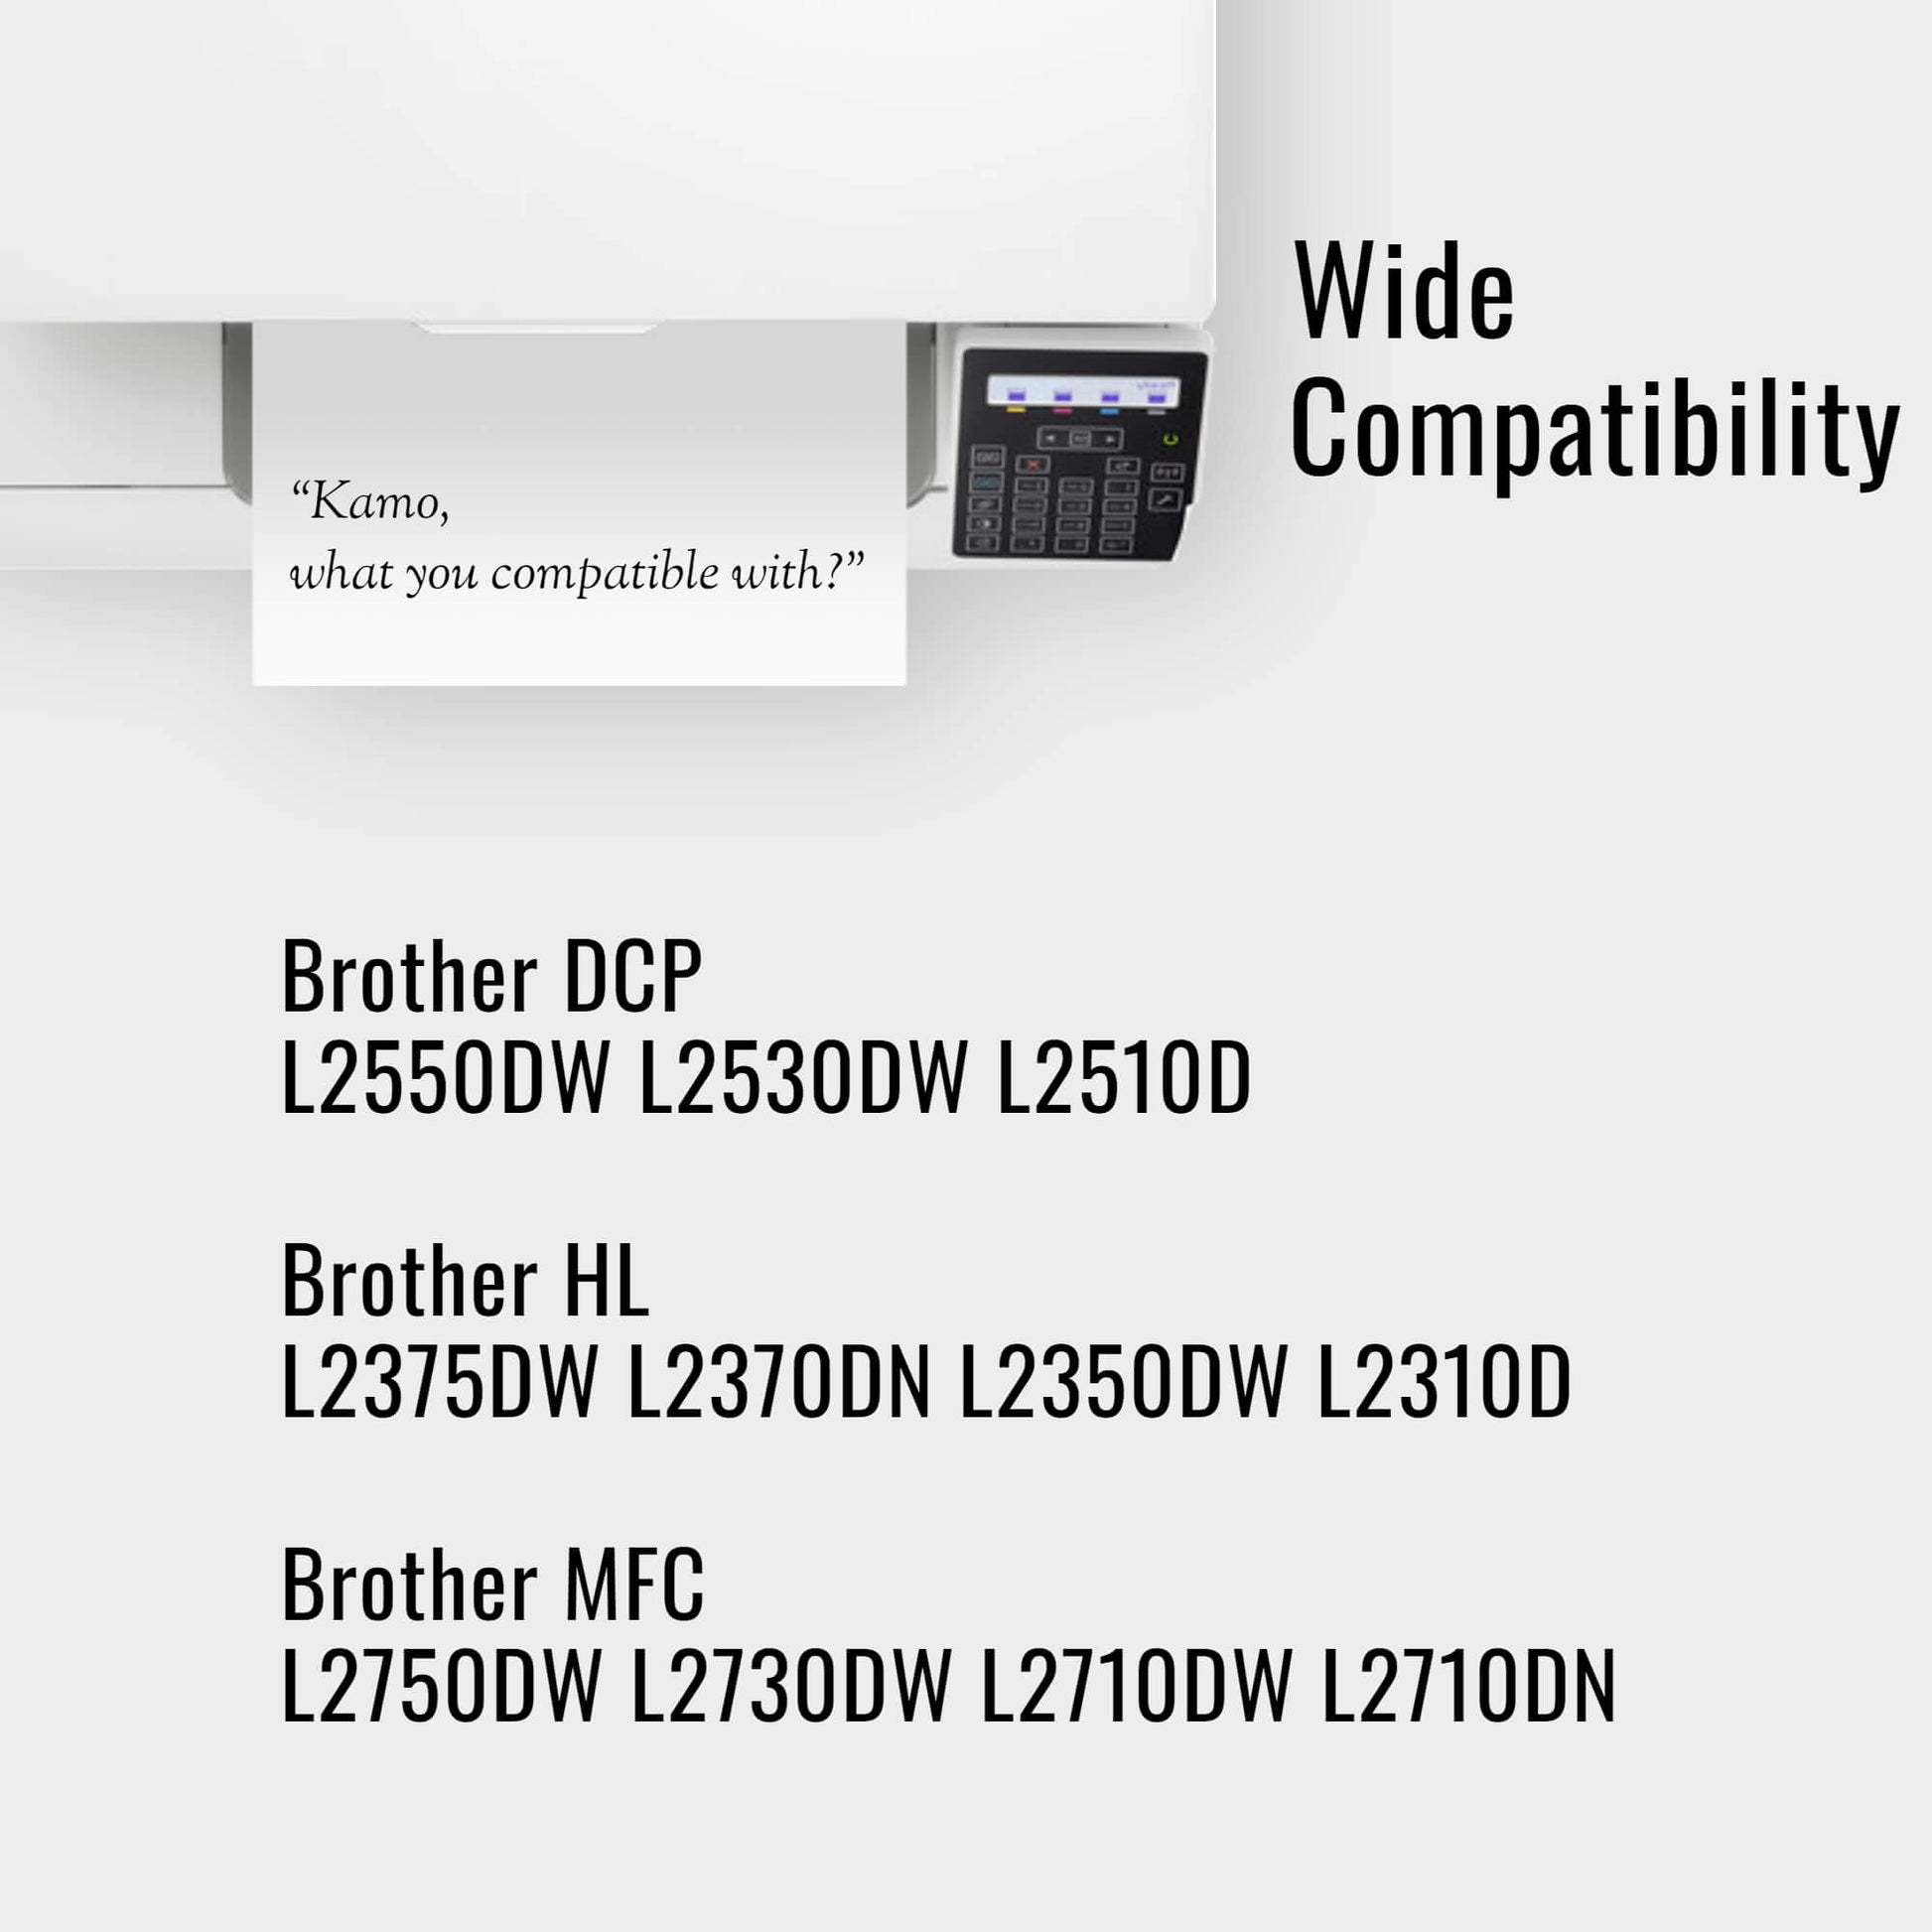 Kamo TN2420 Toner Compatible with Brother TN-2420 TN-2410 (Twin Pack) - Kamo